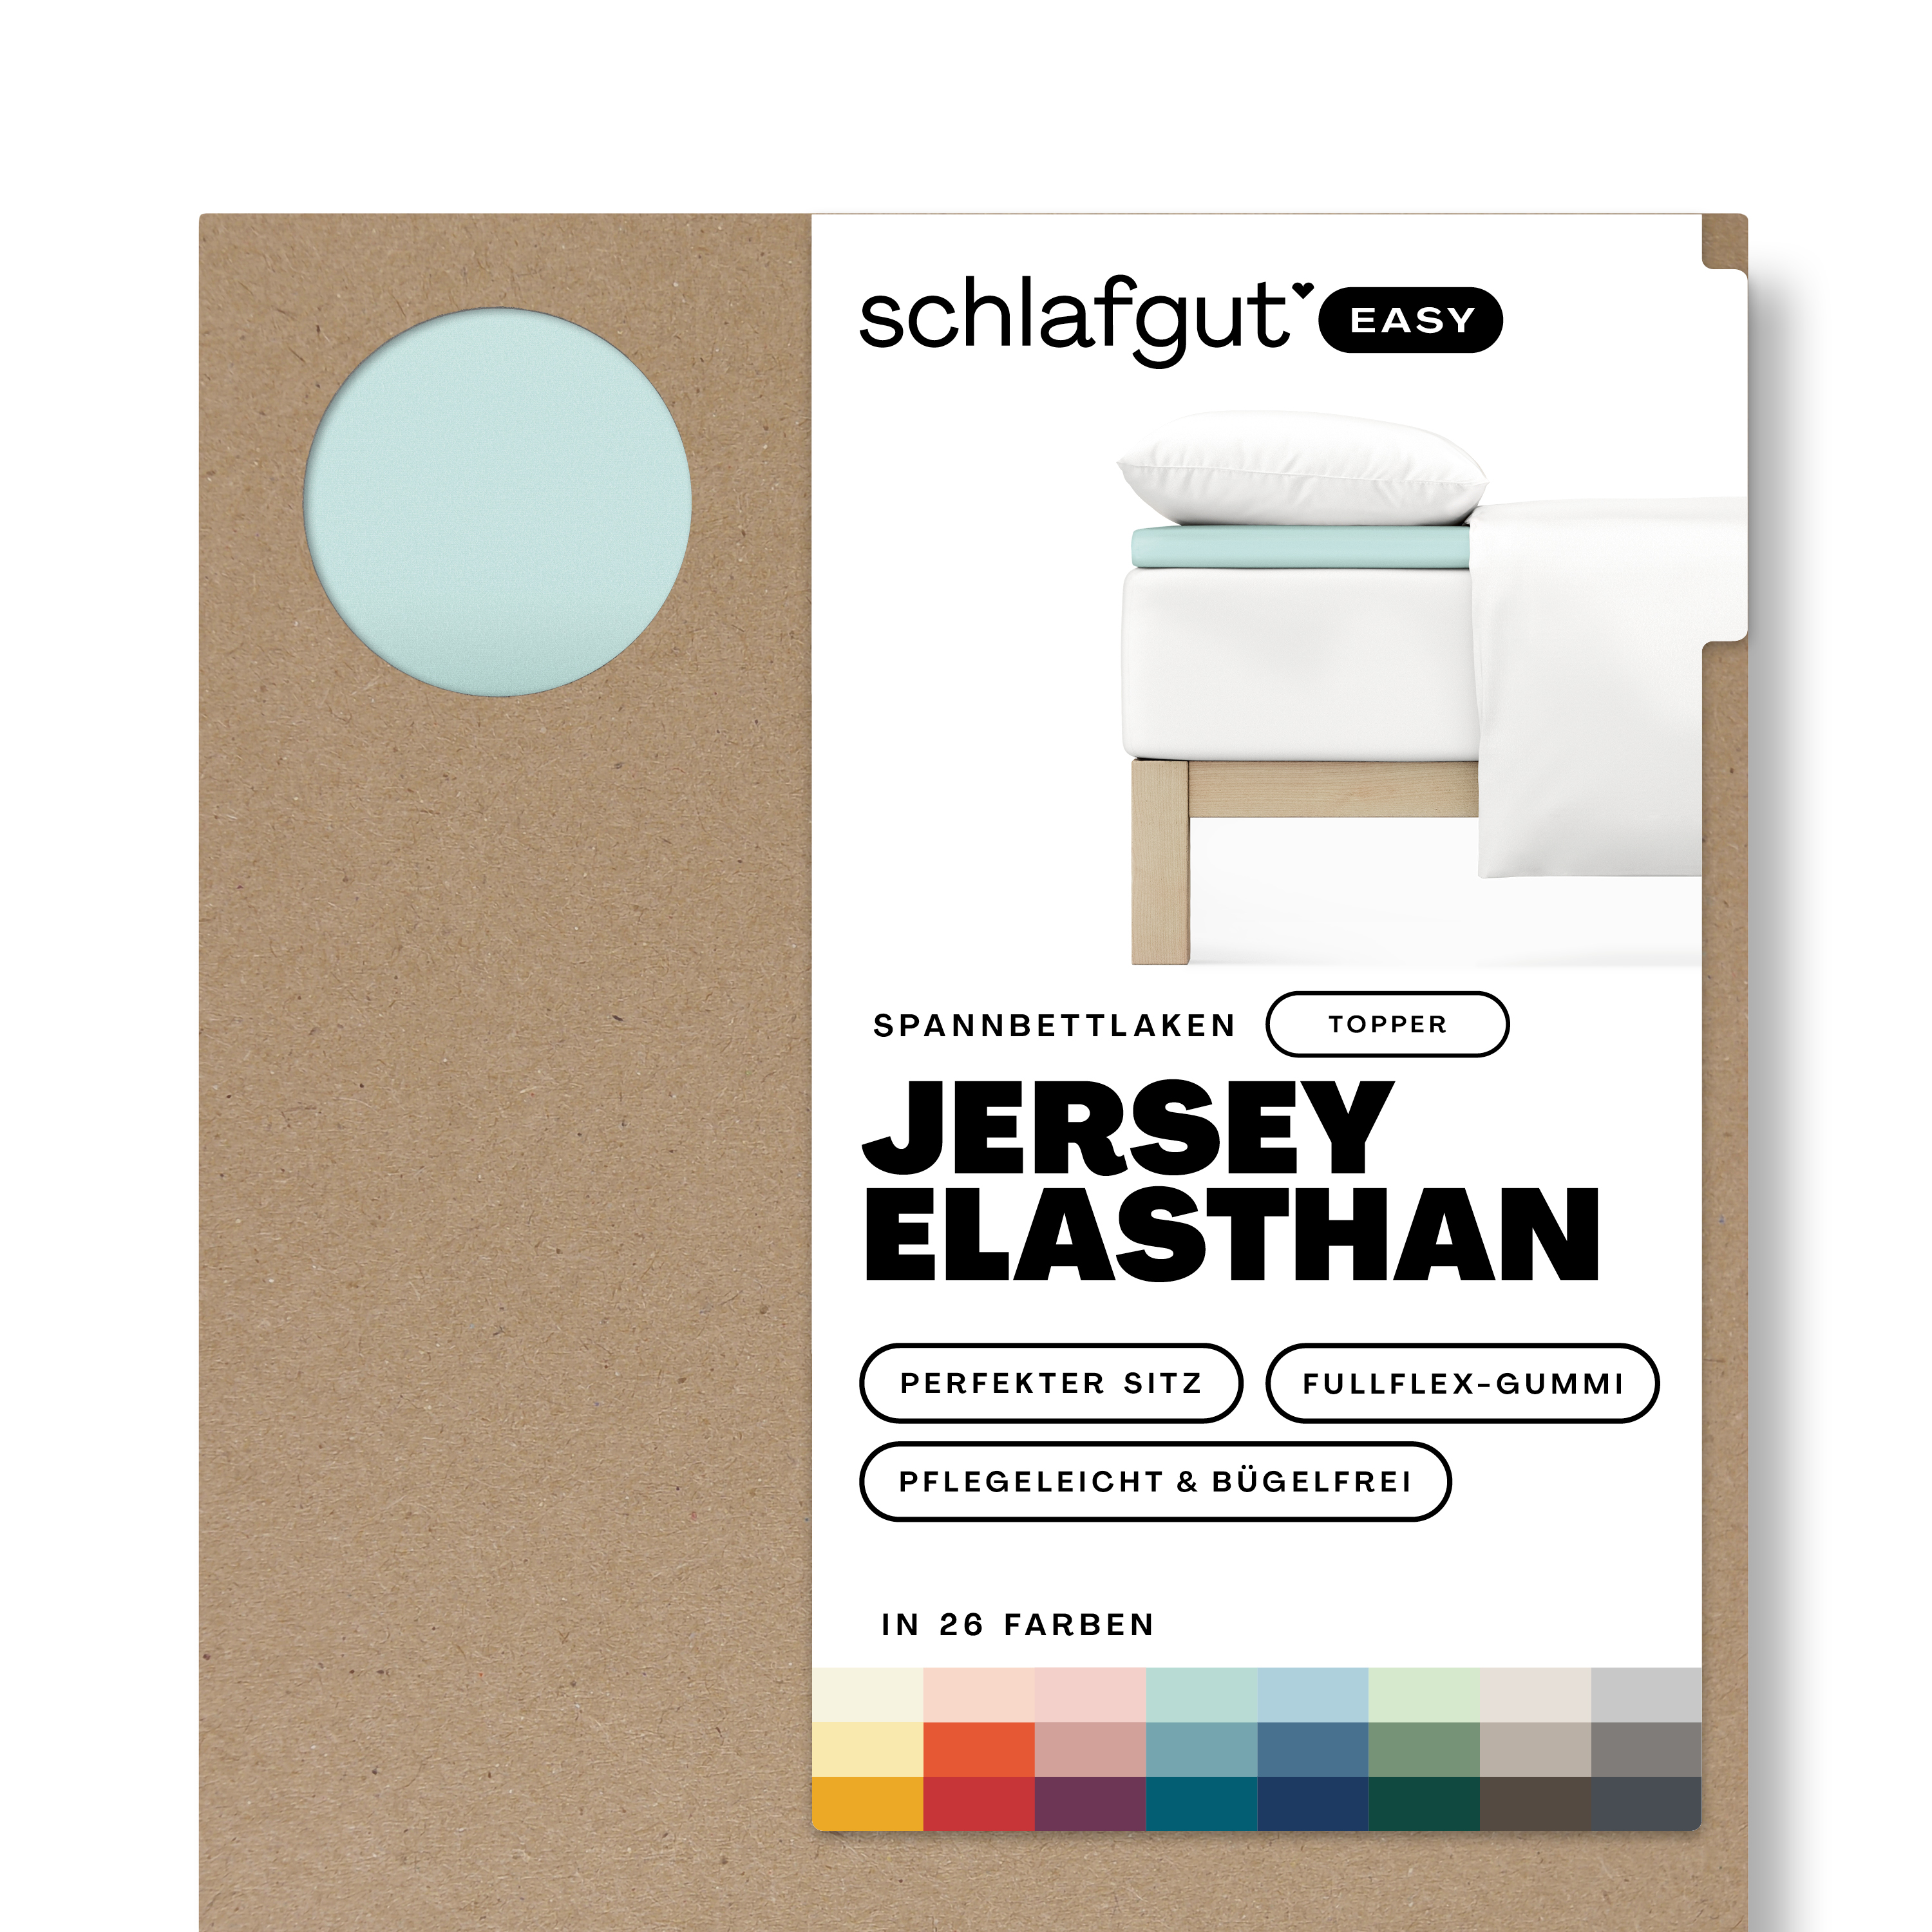 Das Produktbild vom Spannbettlaken der Reihe Easy Elasthan Topper in Farbe petrol light von Schlafgut